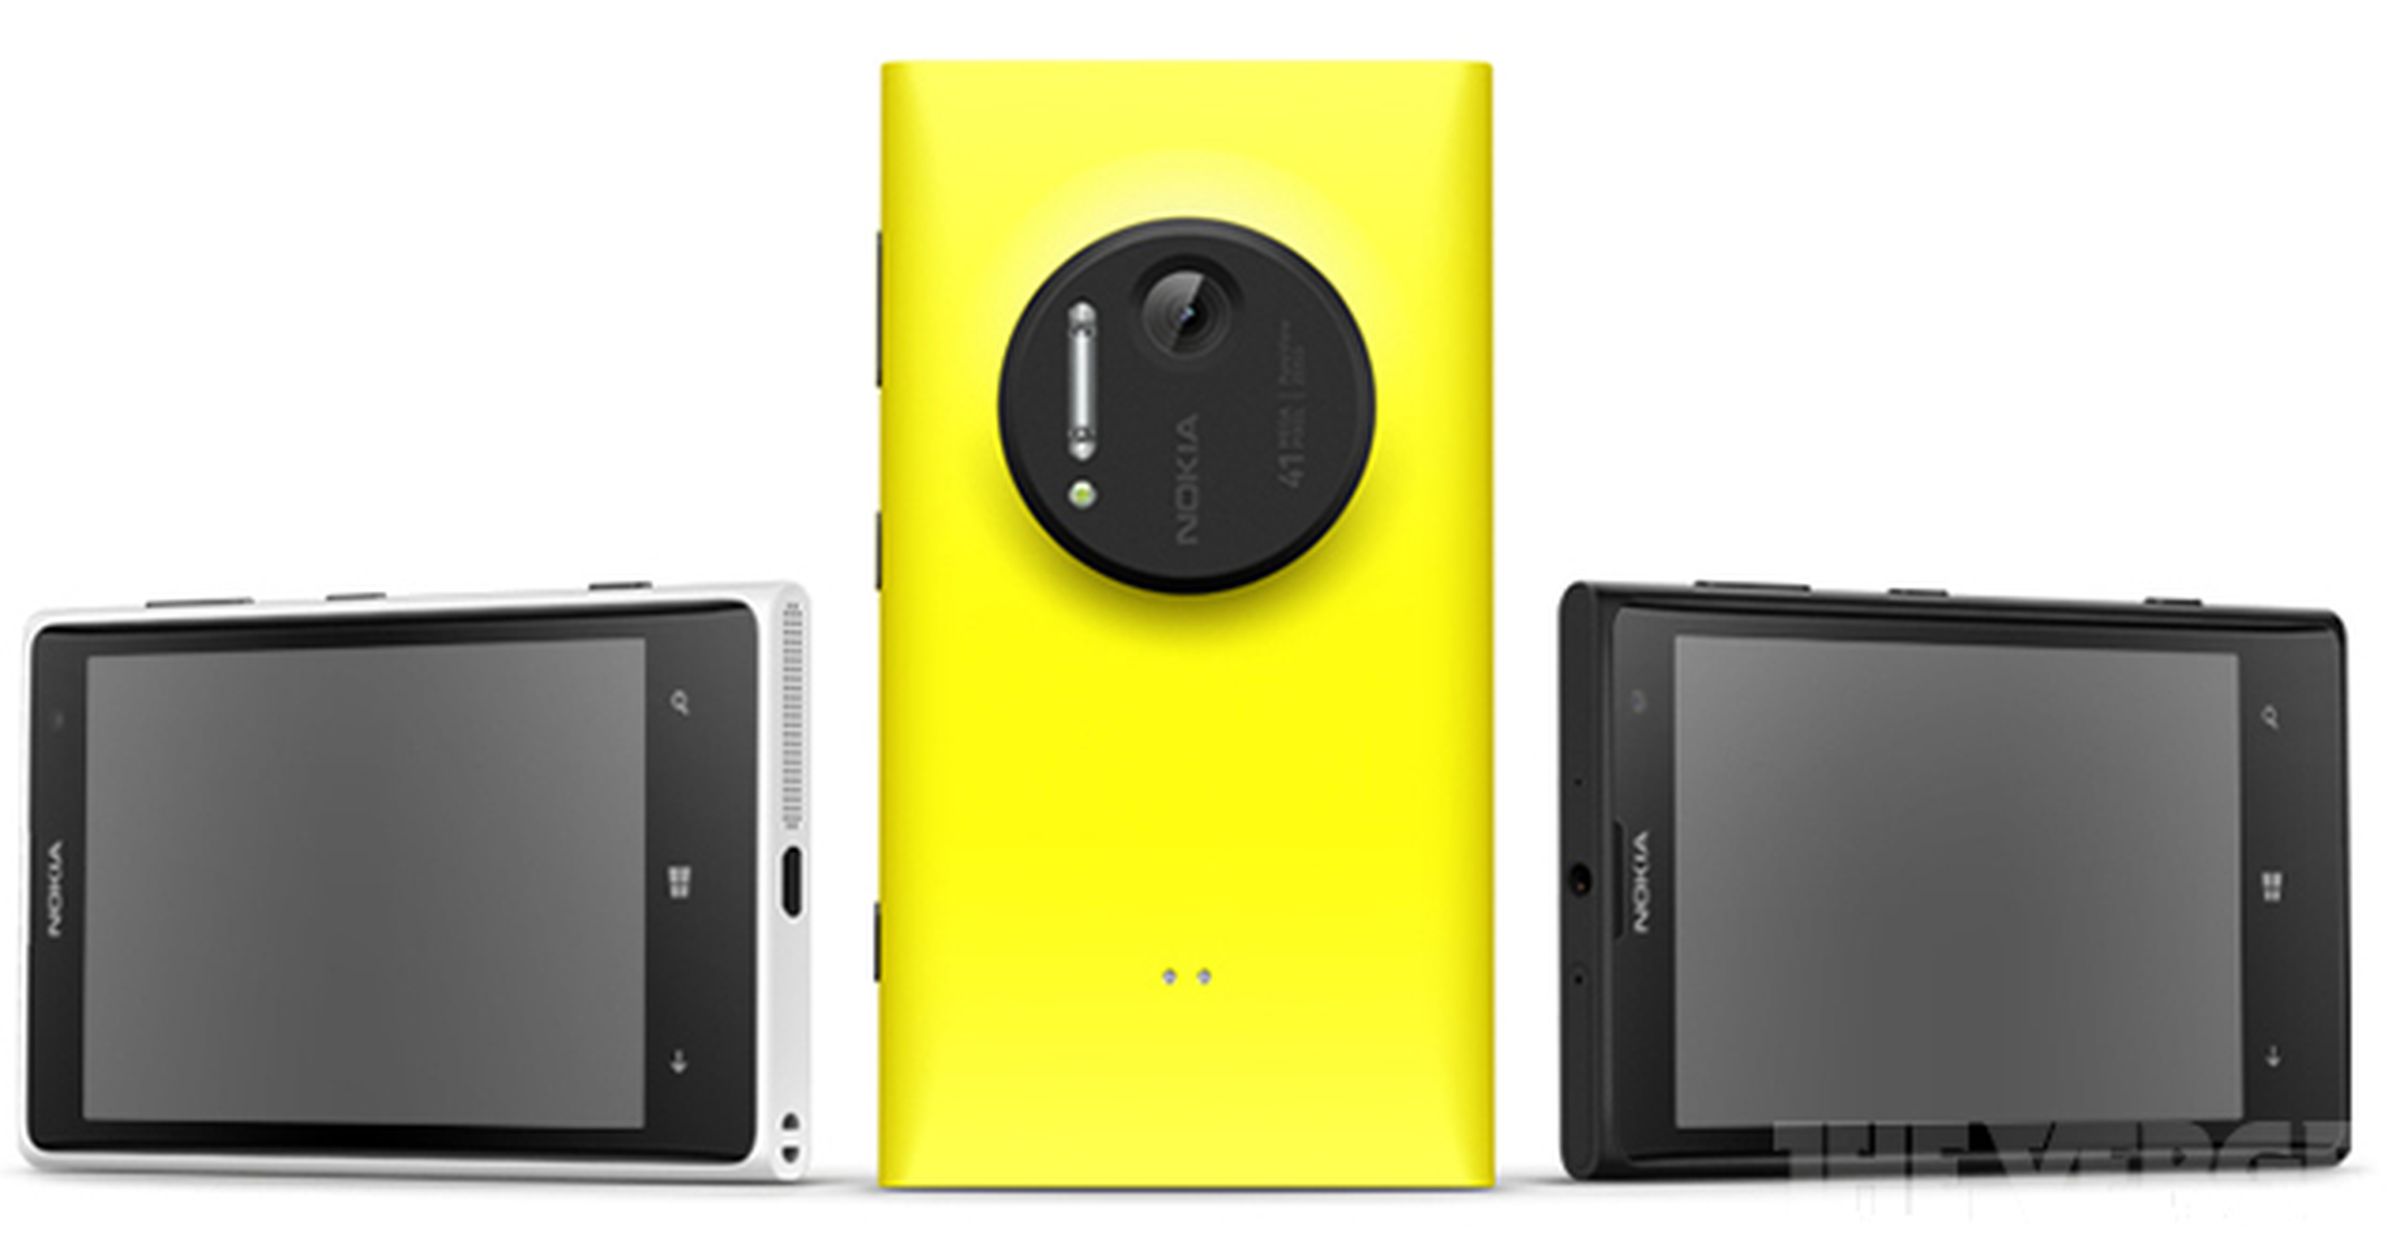 Nokia Lumia 1020 press photos